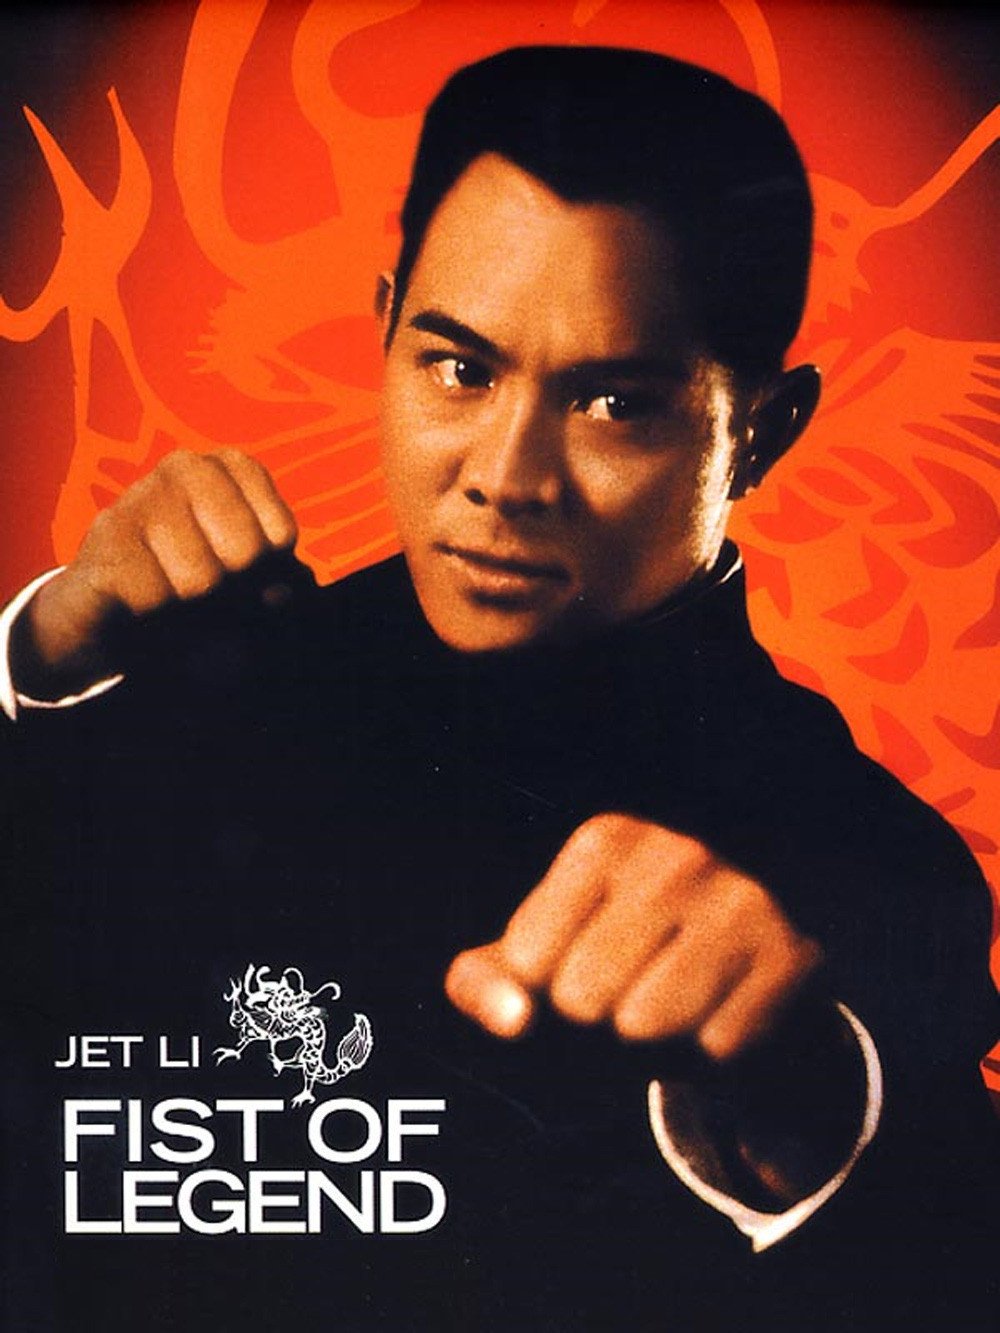 Poster du film Fist of Legend réalisé par Gordon Chan avec Jet Li